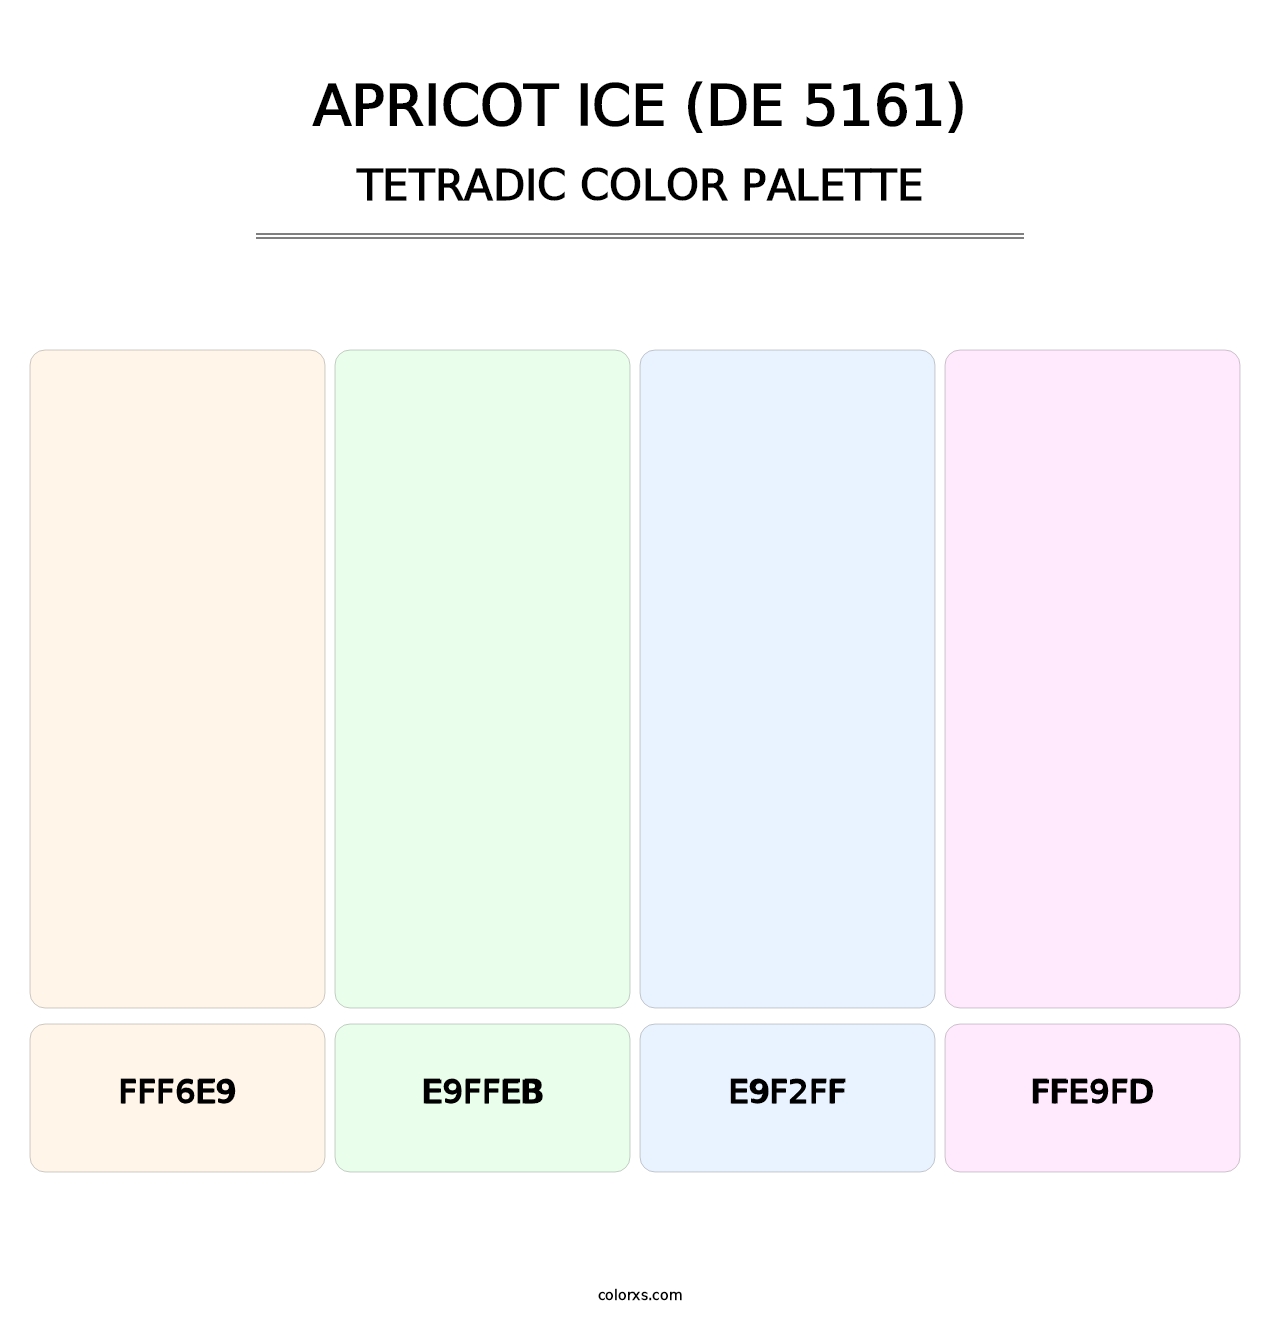 Apricot Ice (DE 5161) - Tetradic Color Palette